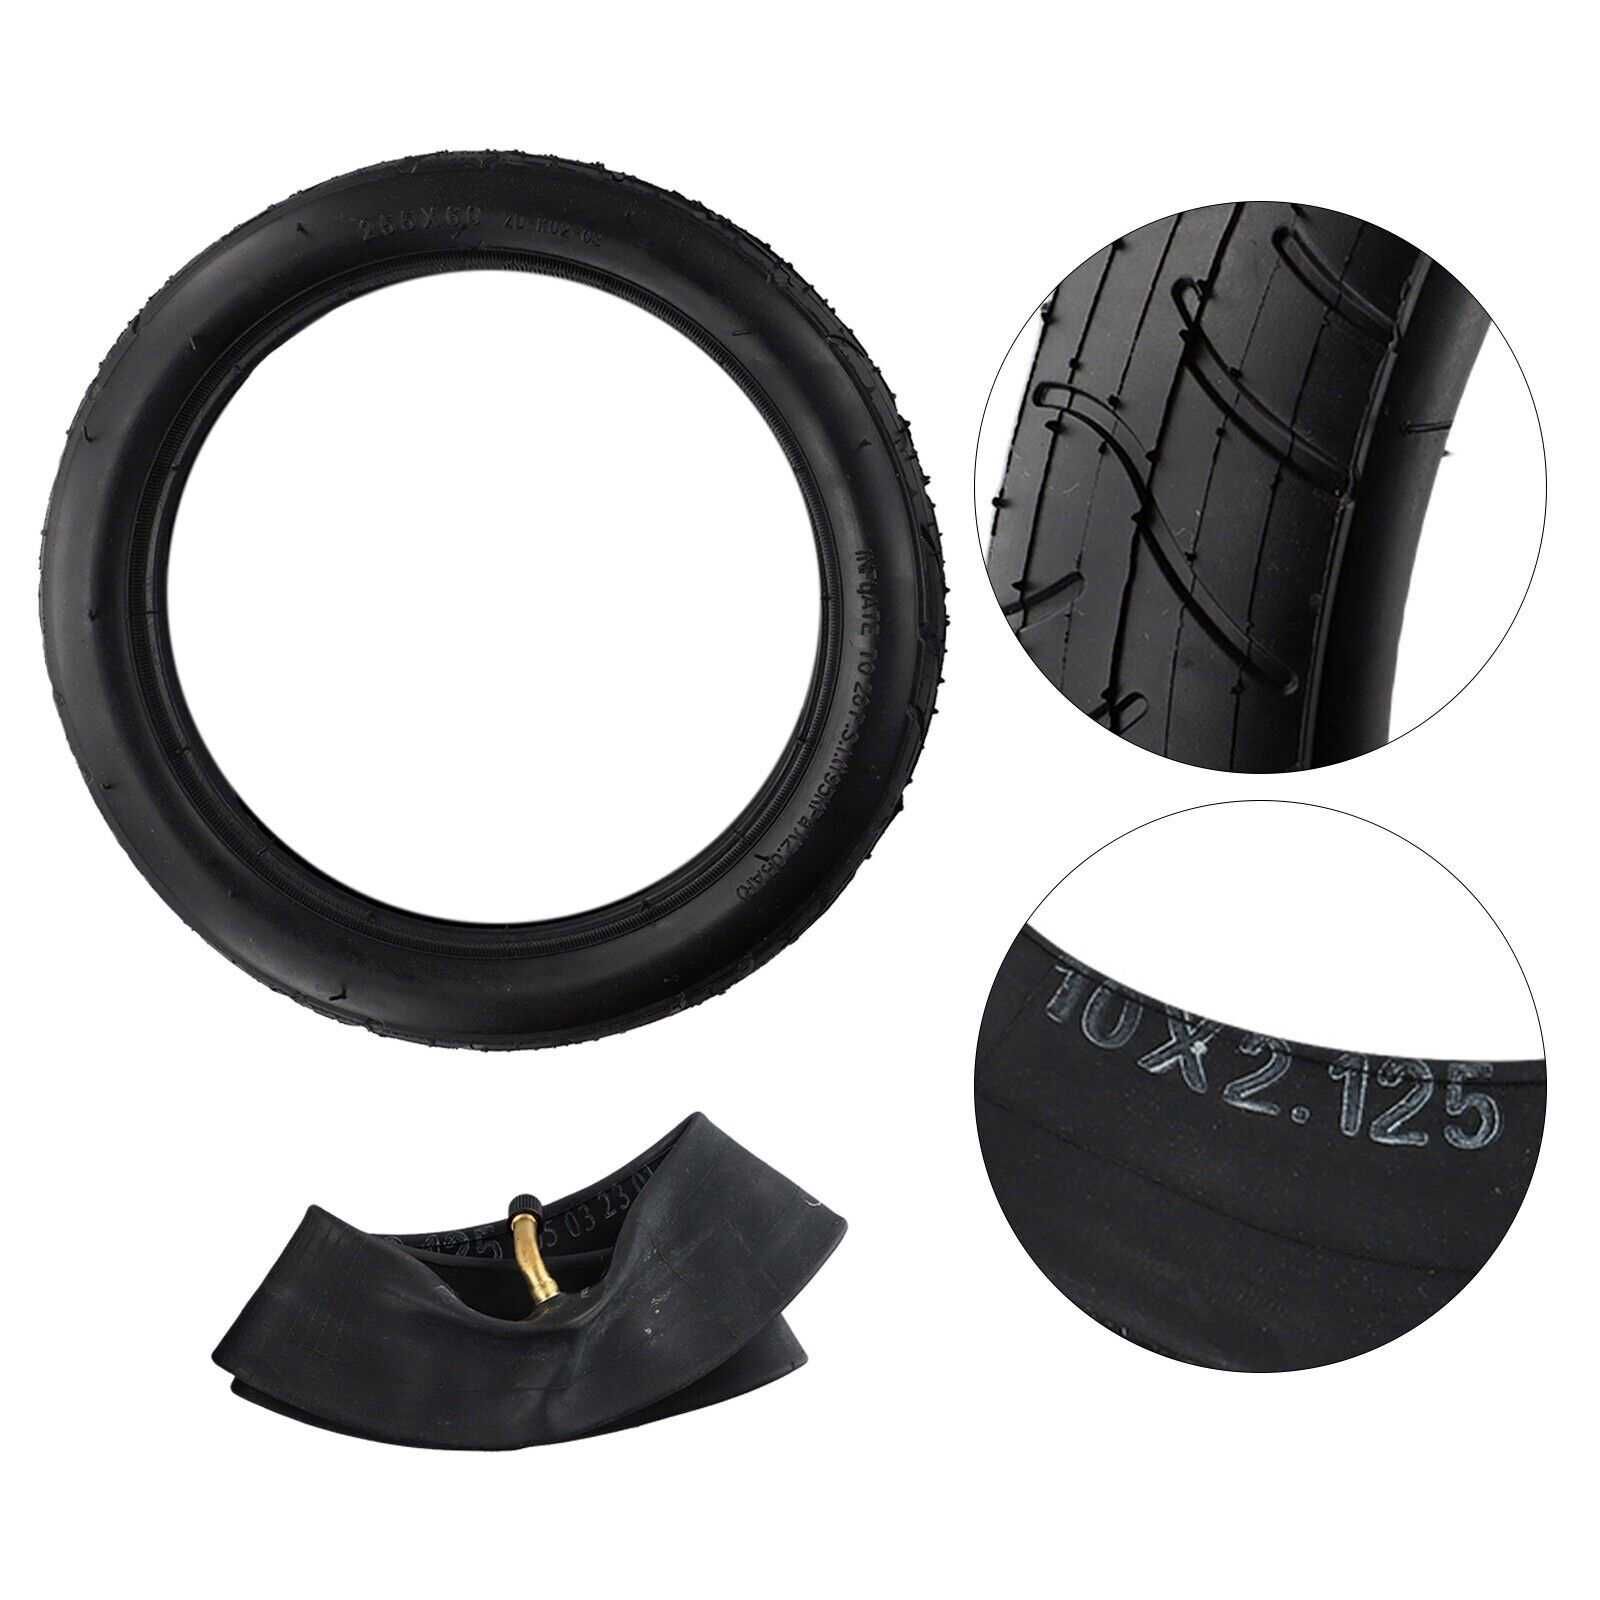 Външни и вътрешни гуми за триколки 260 x 55 / 255 x 60